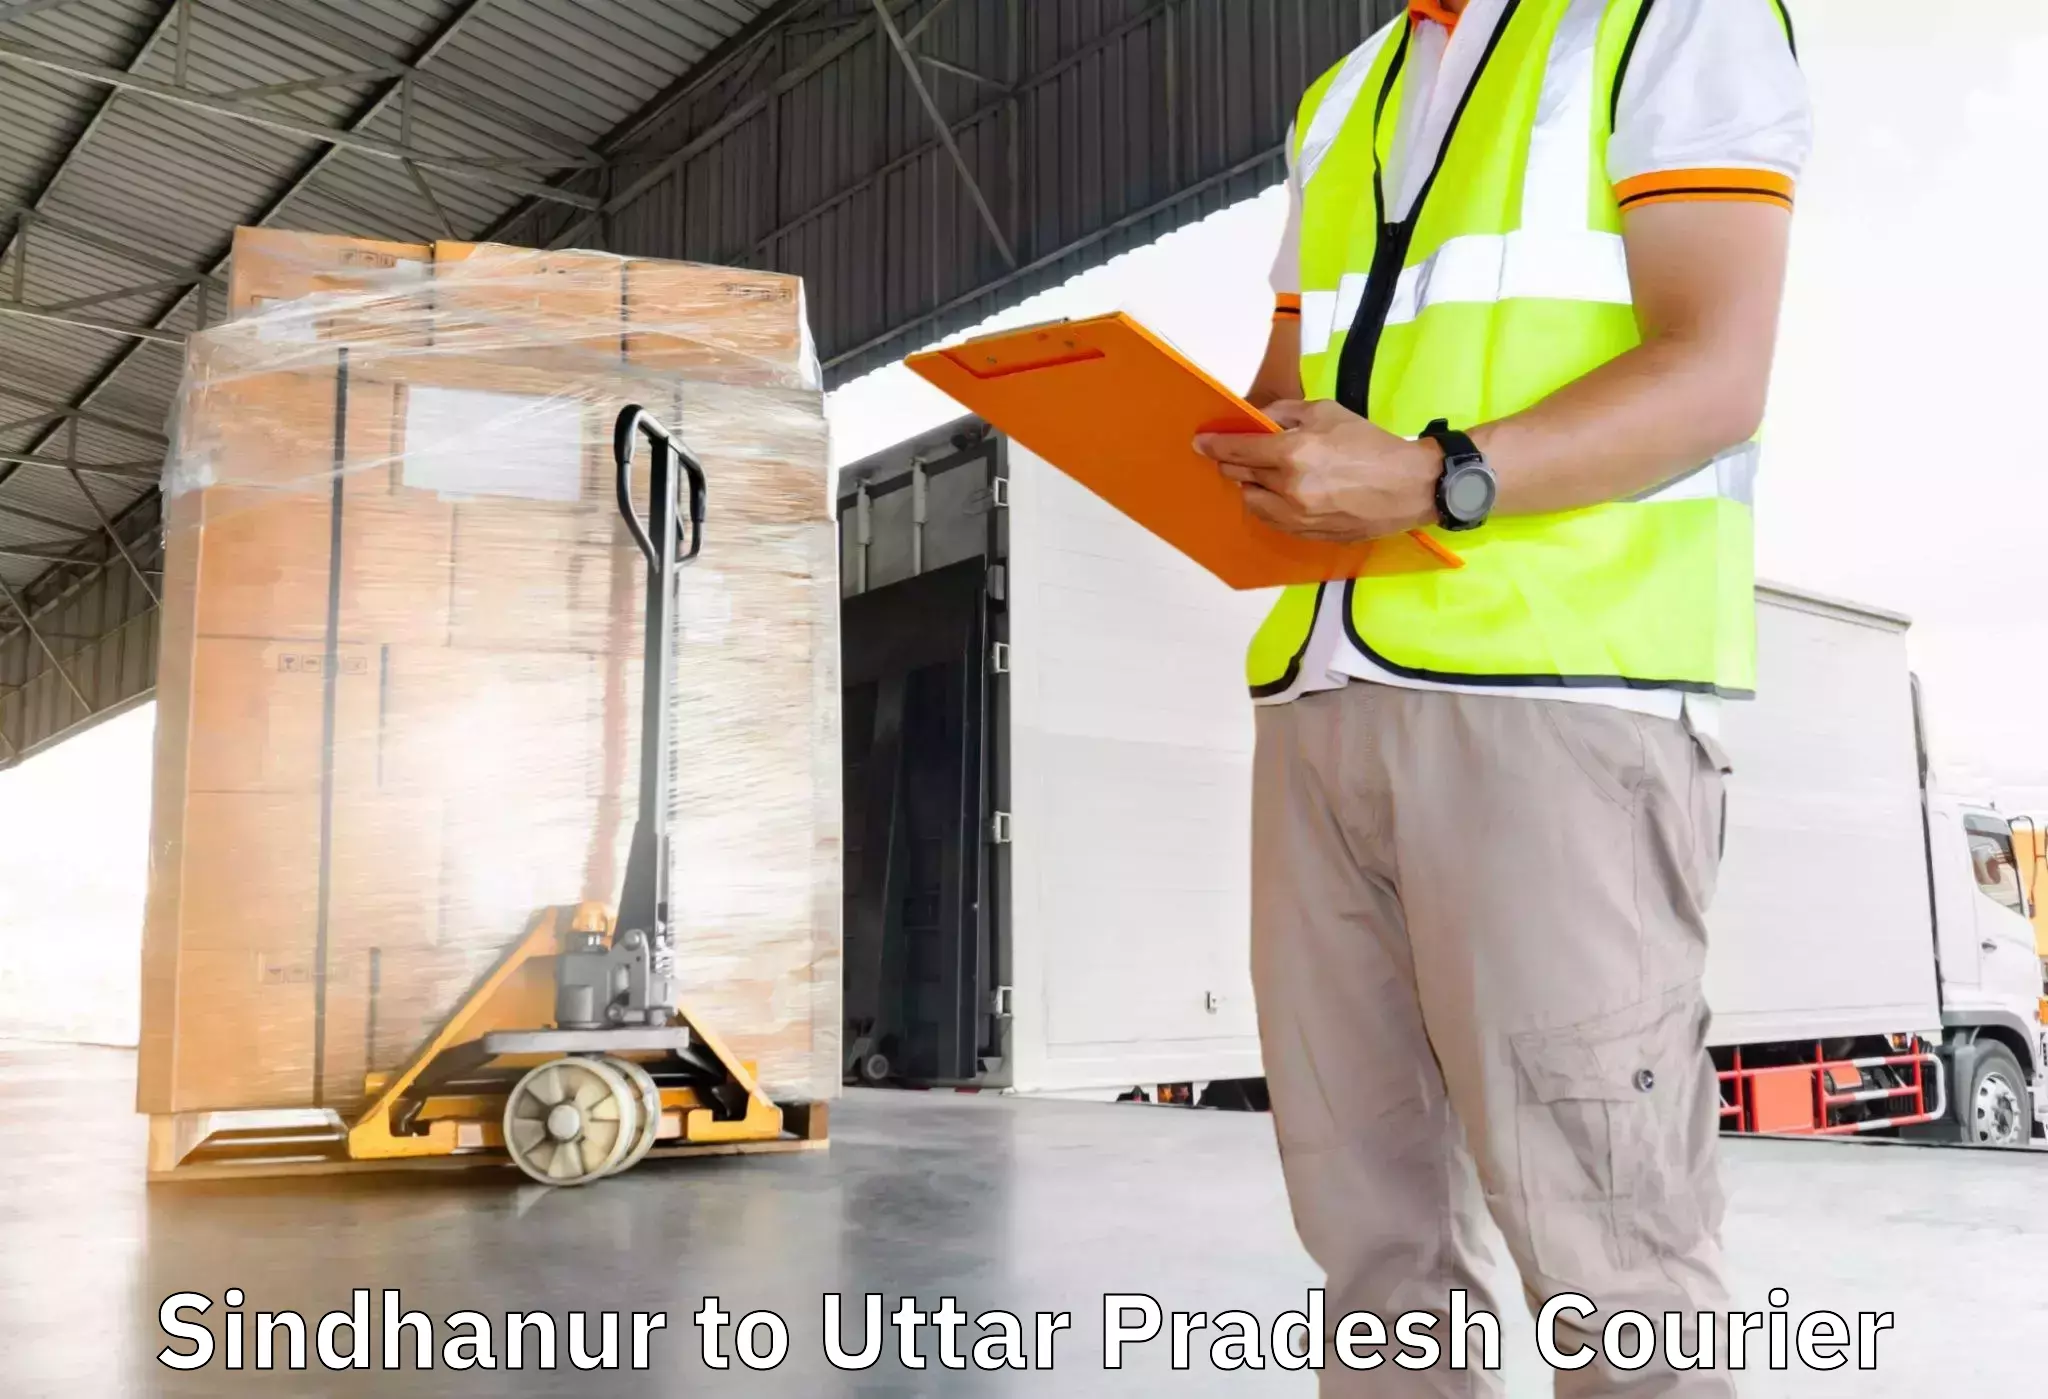 Furniture moving and handling Sindhanur to IIT Kanpur